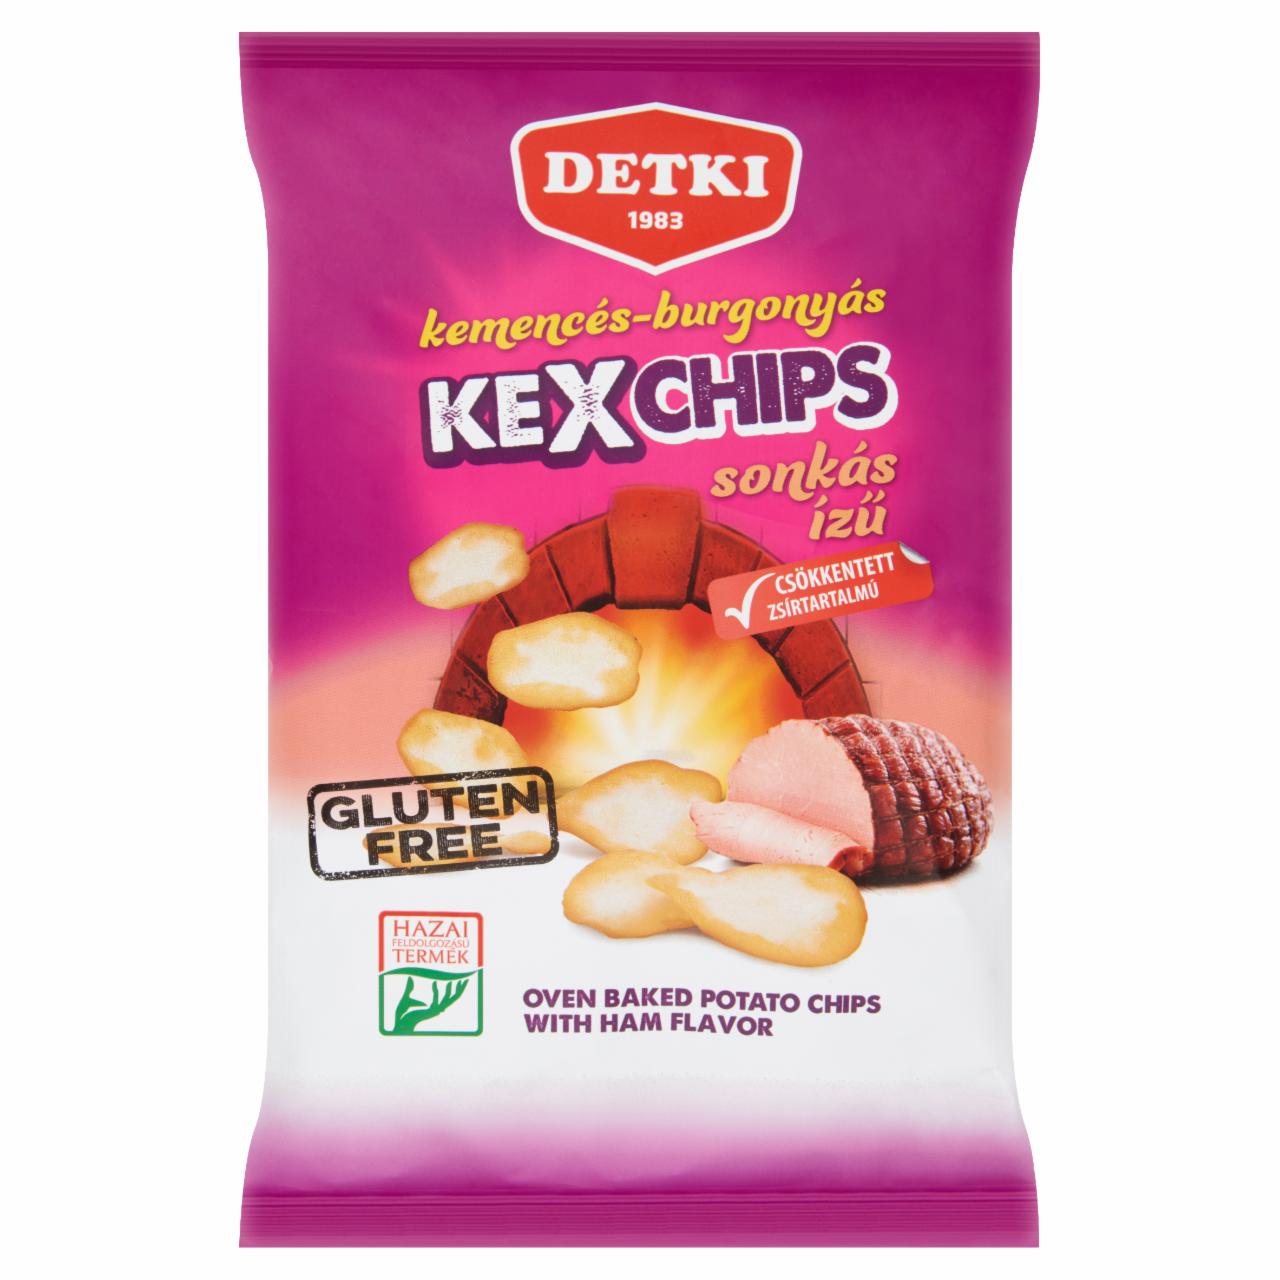 Képek - Detki Kexchips sonkás ízű kemencés-burgonyás chips 75 g